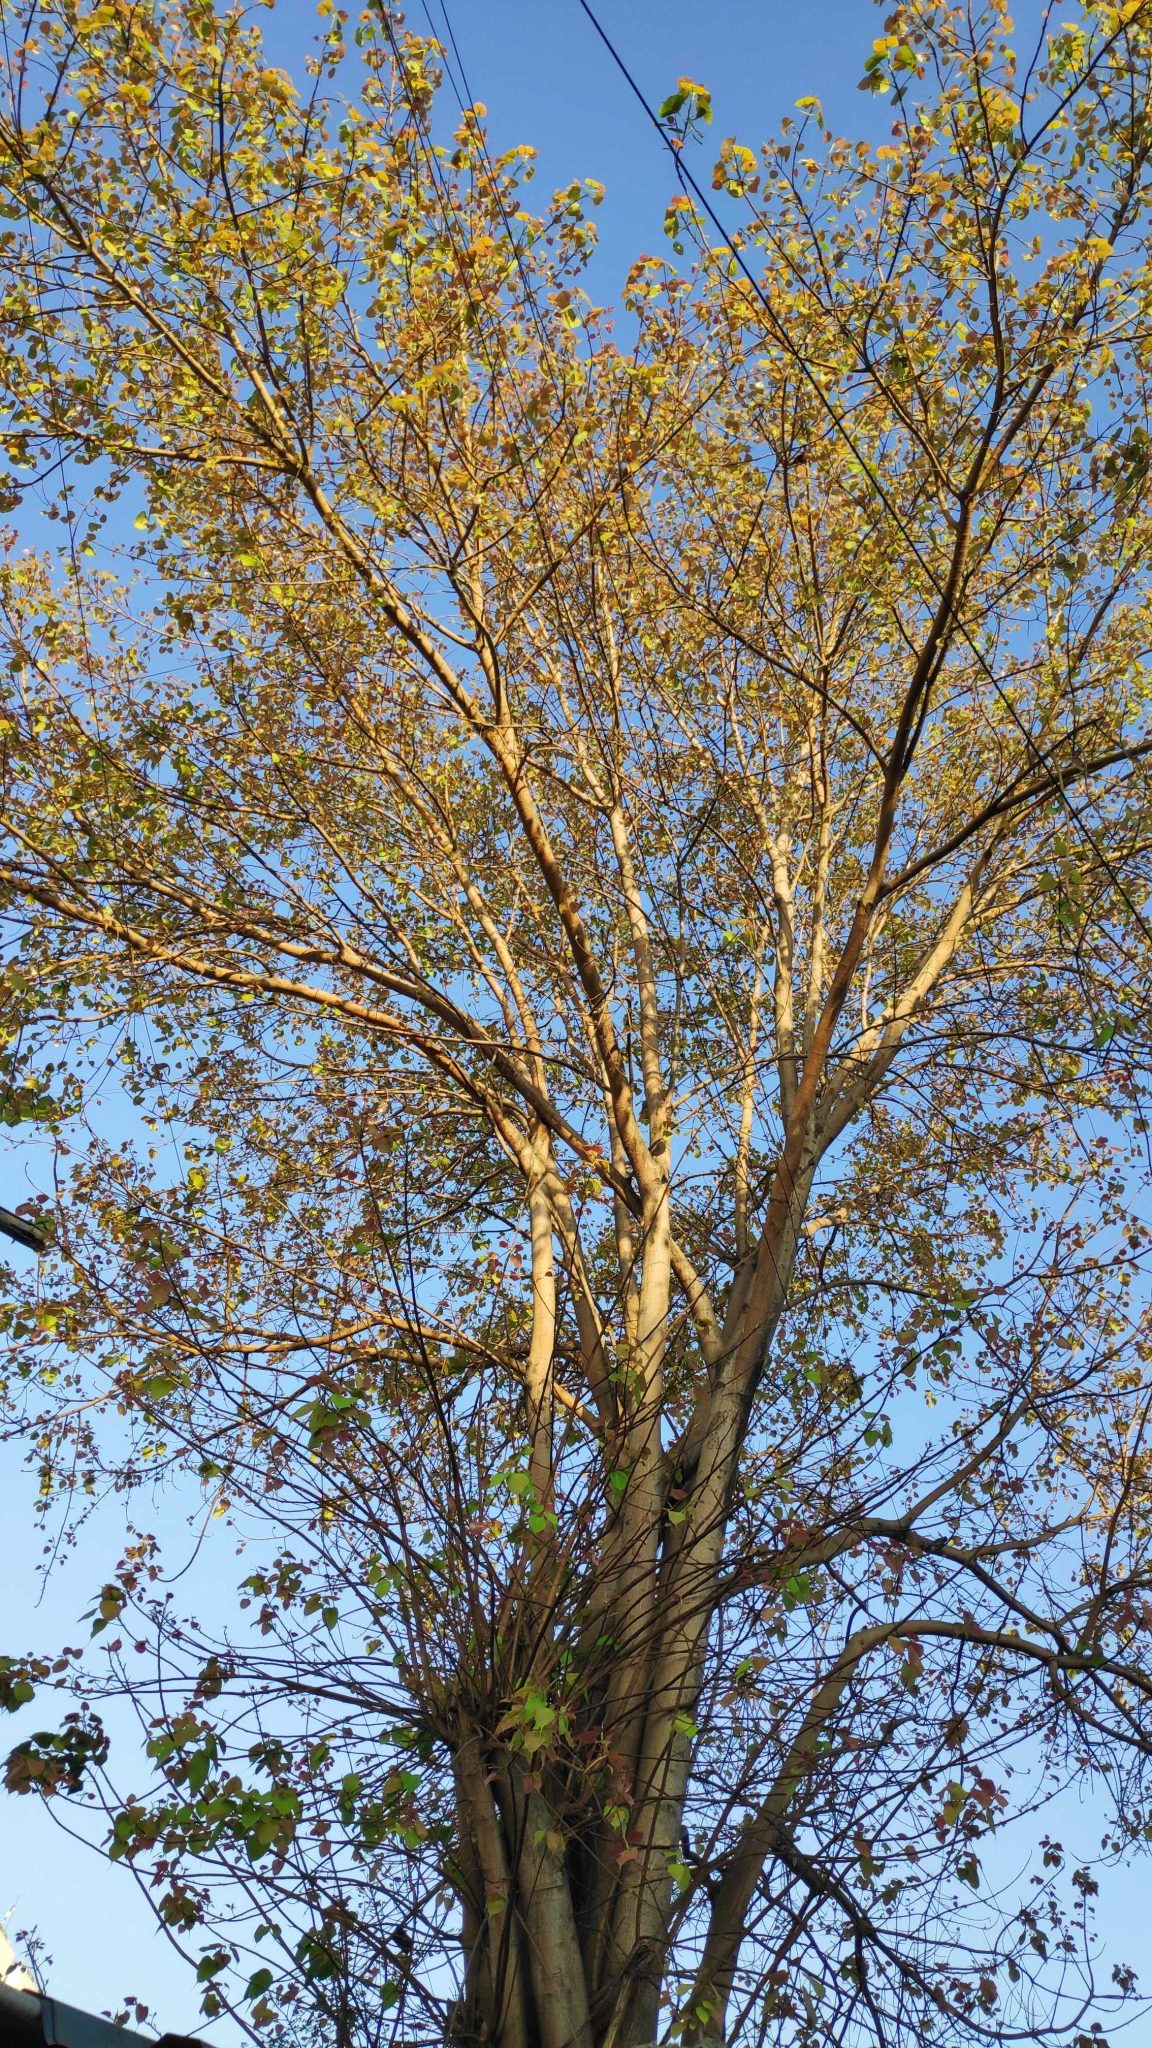 Pimple tree having new leaves